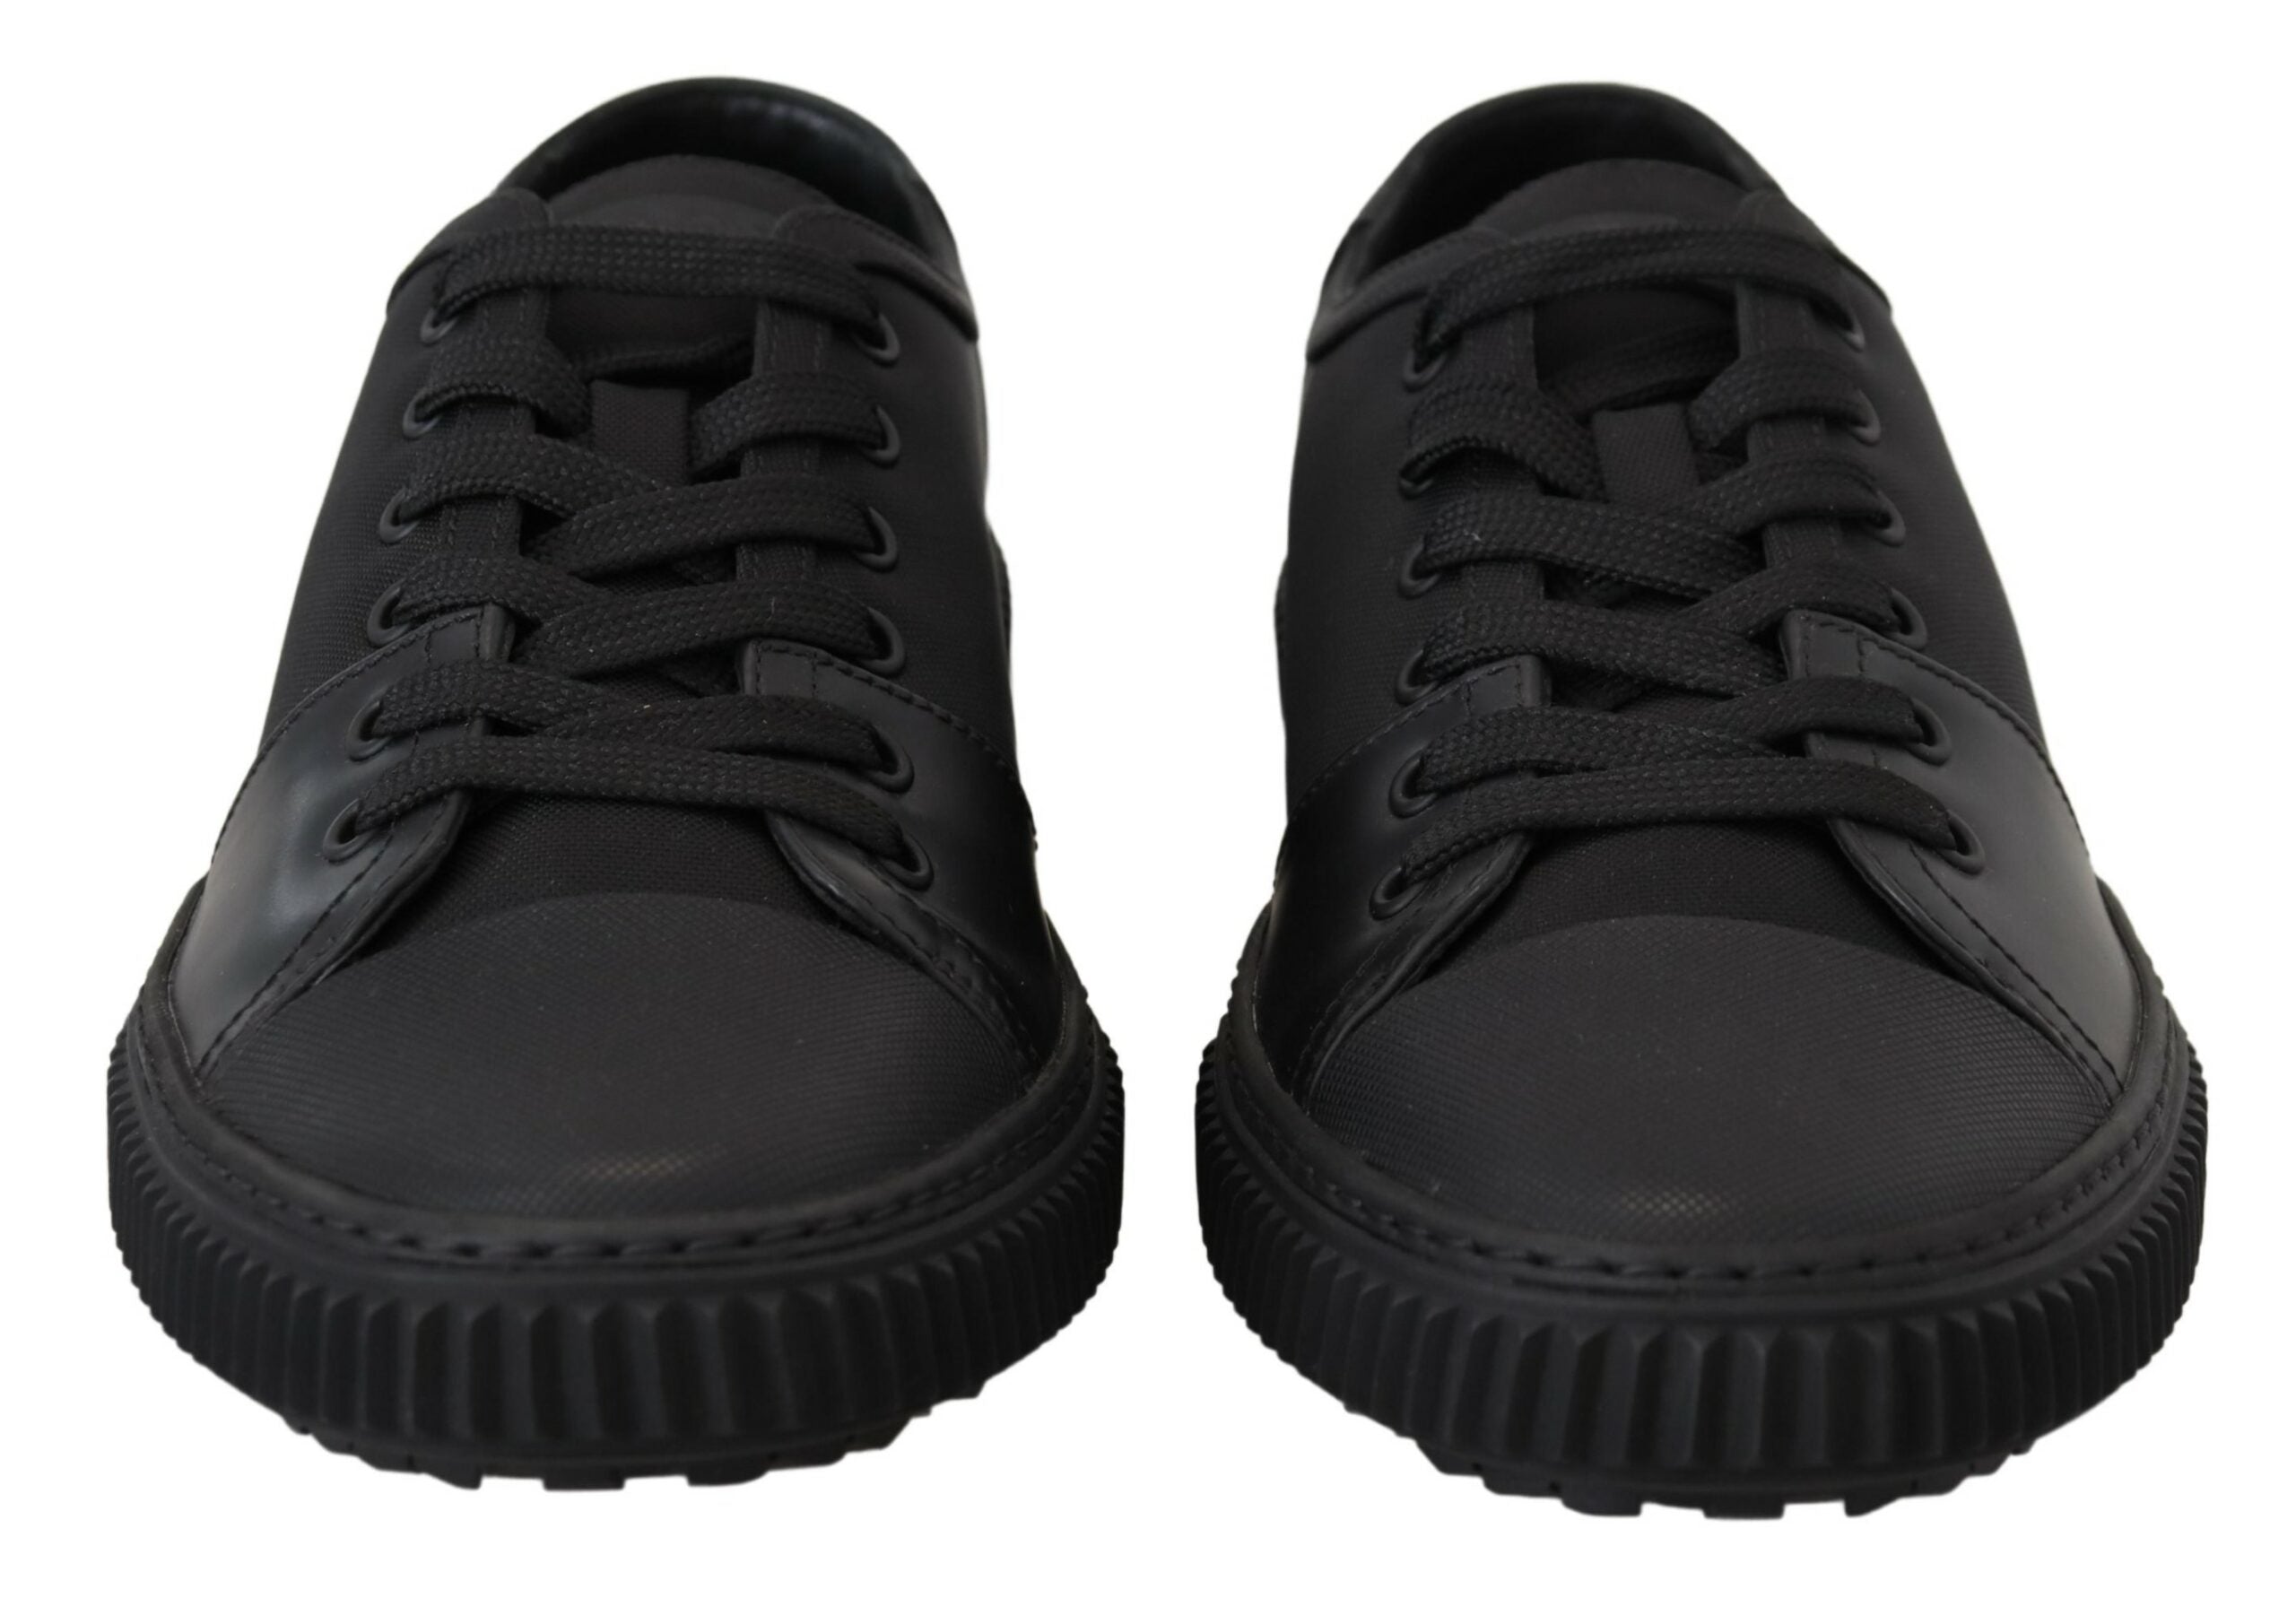 Prada Elegant Black Nylon Low-top Sneakers